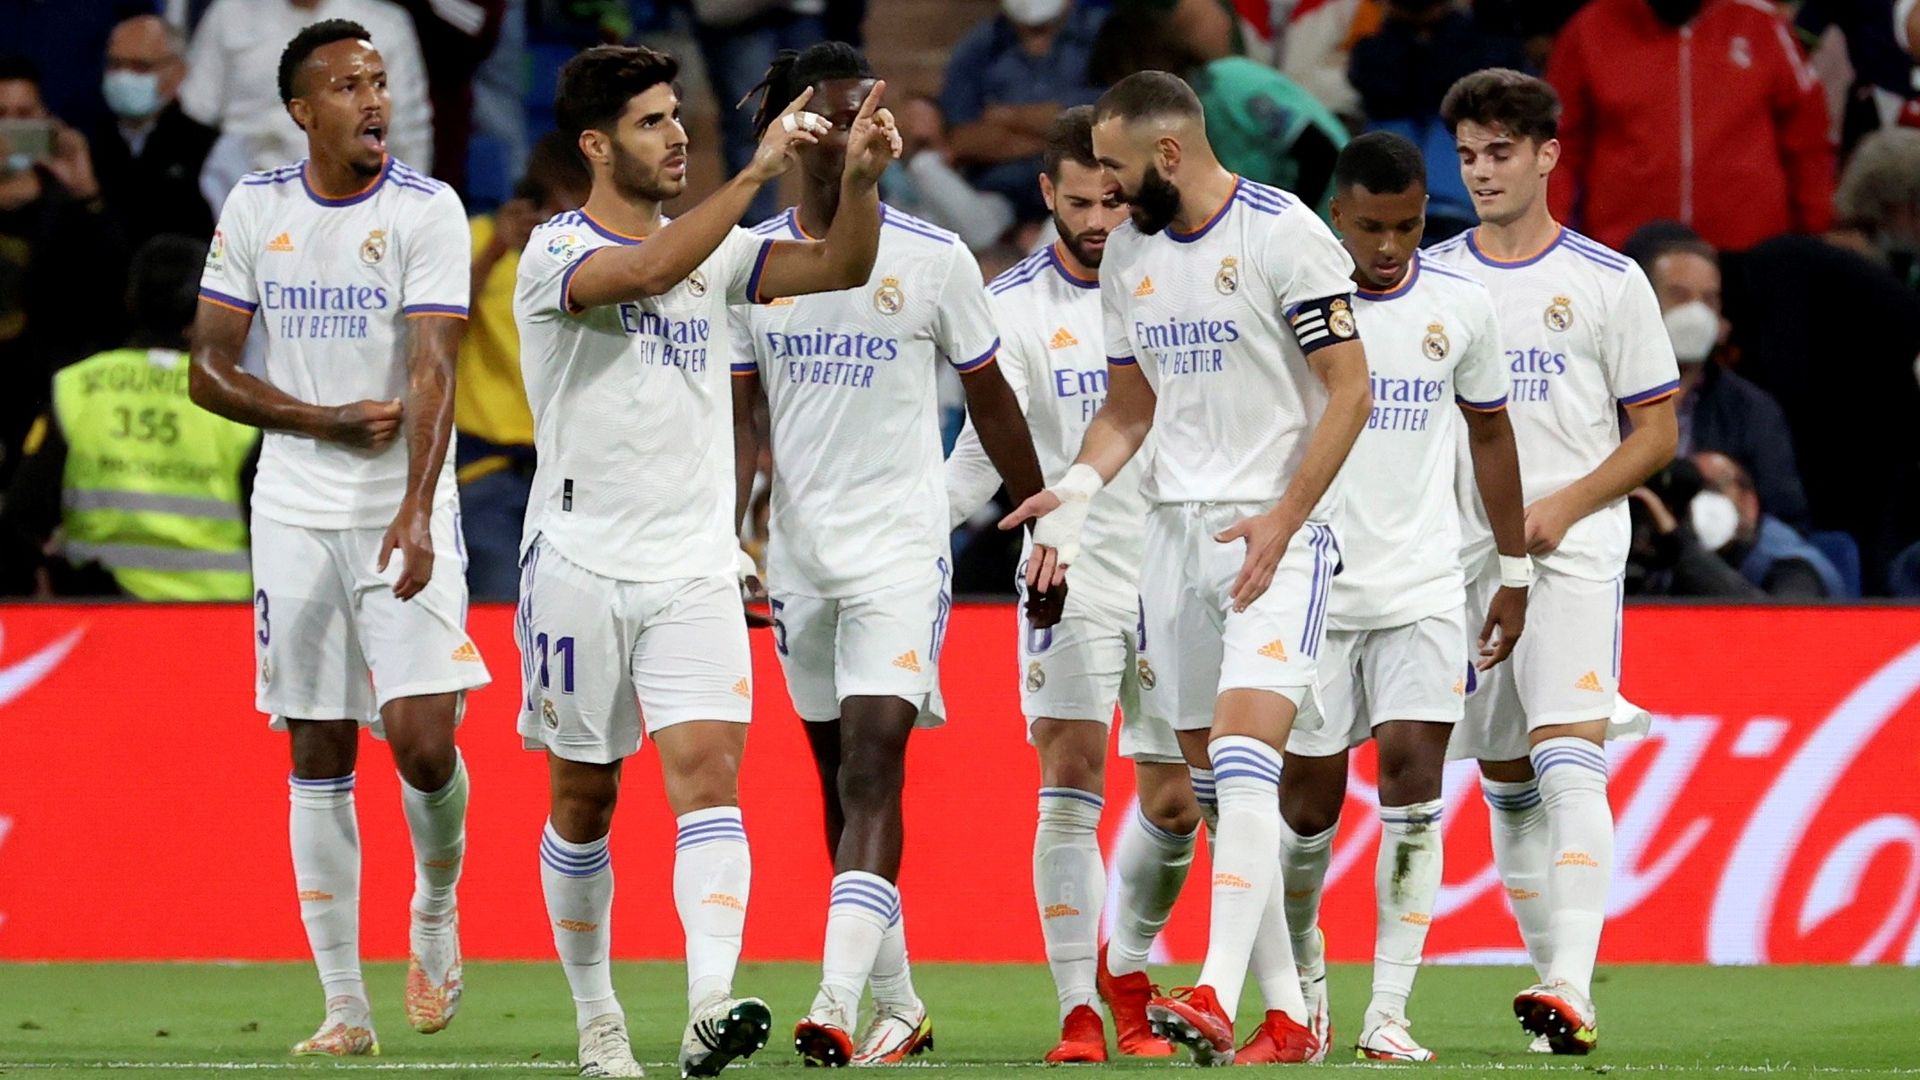 Le Real Madrid sans joueur espagnol au coup d'envoi face à Villarreal, une  première - L'Équipe